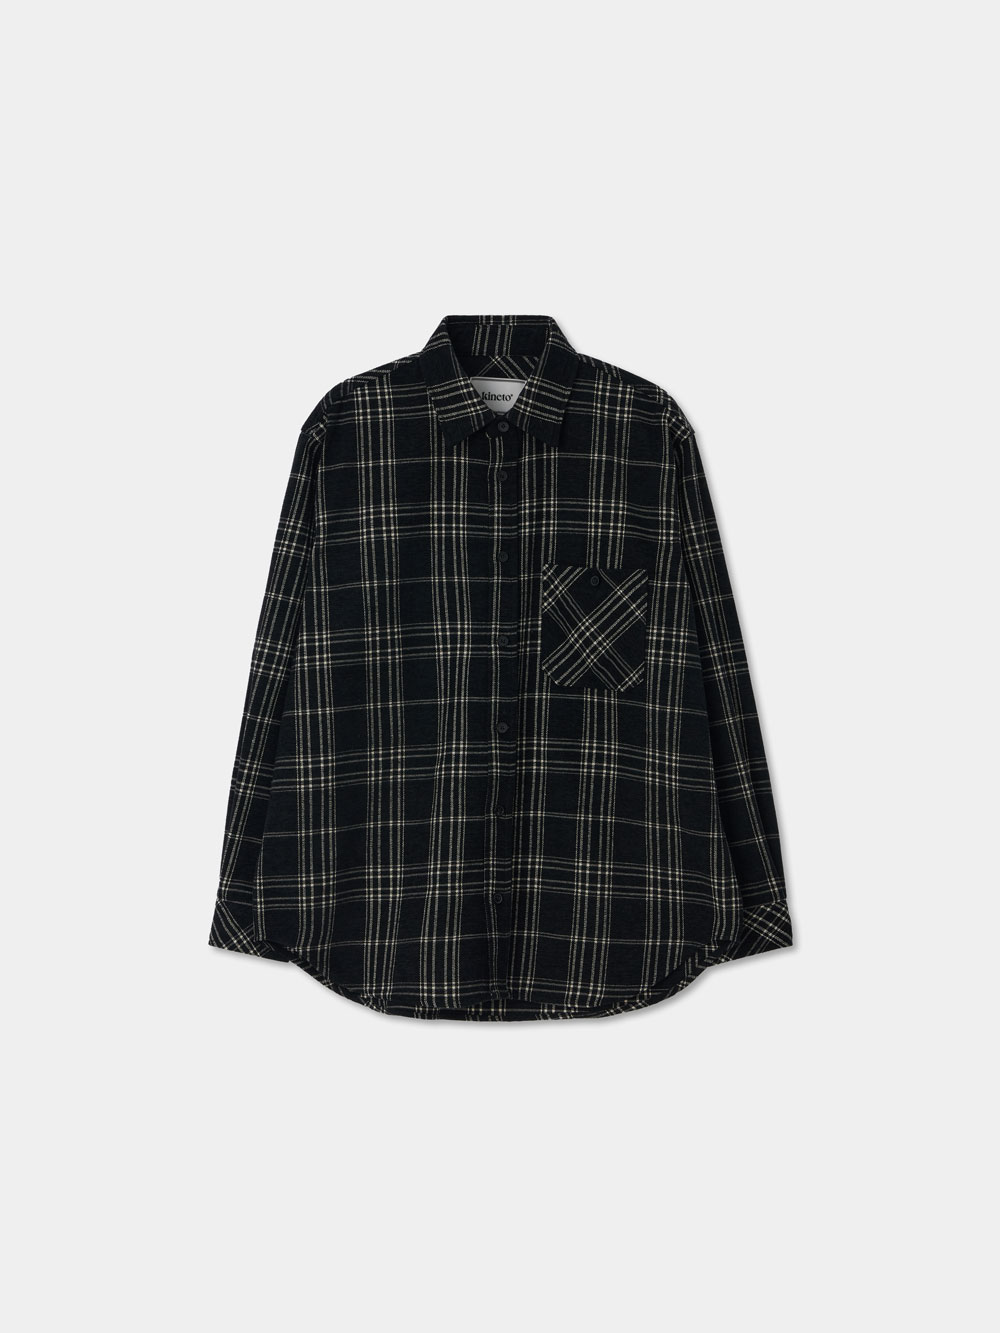 Jacquard Checked Pattern Shirt_Classic Black